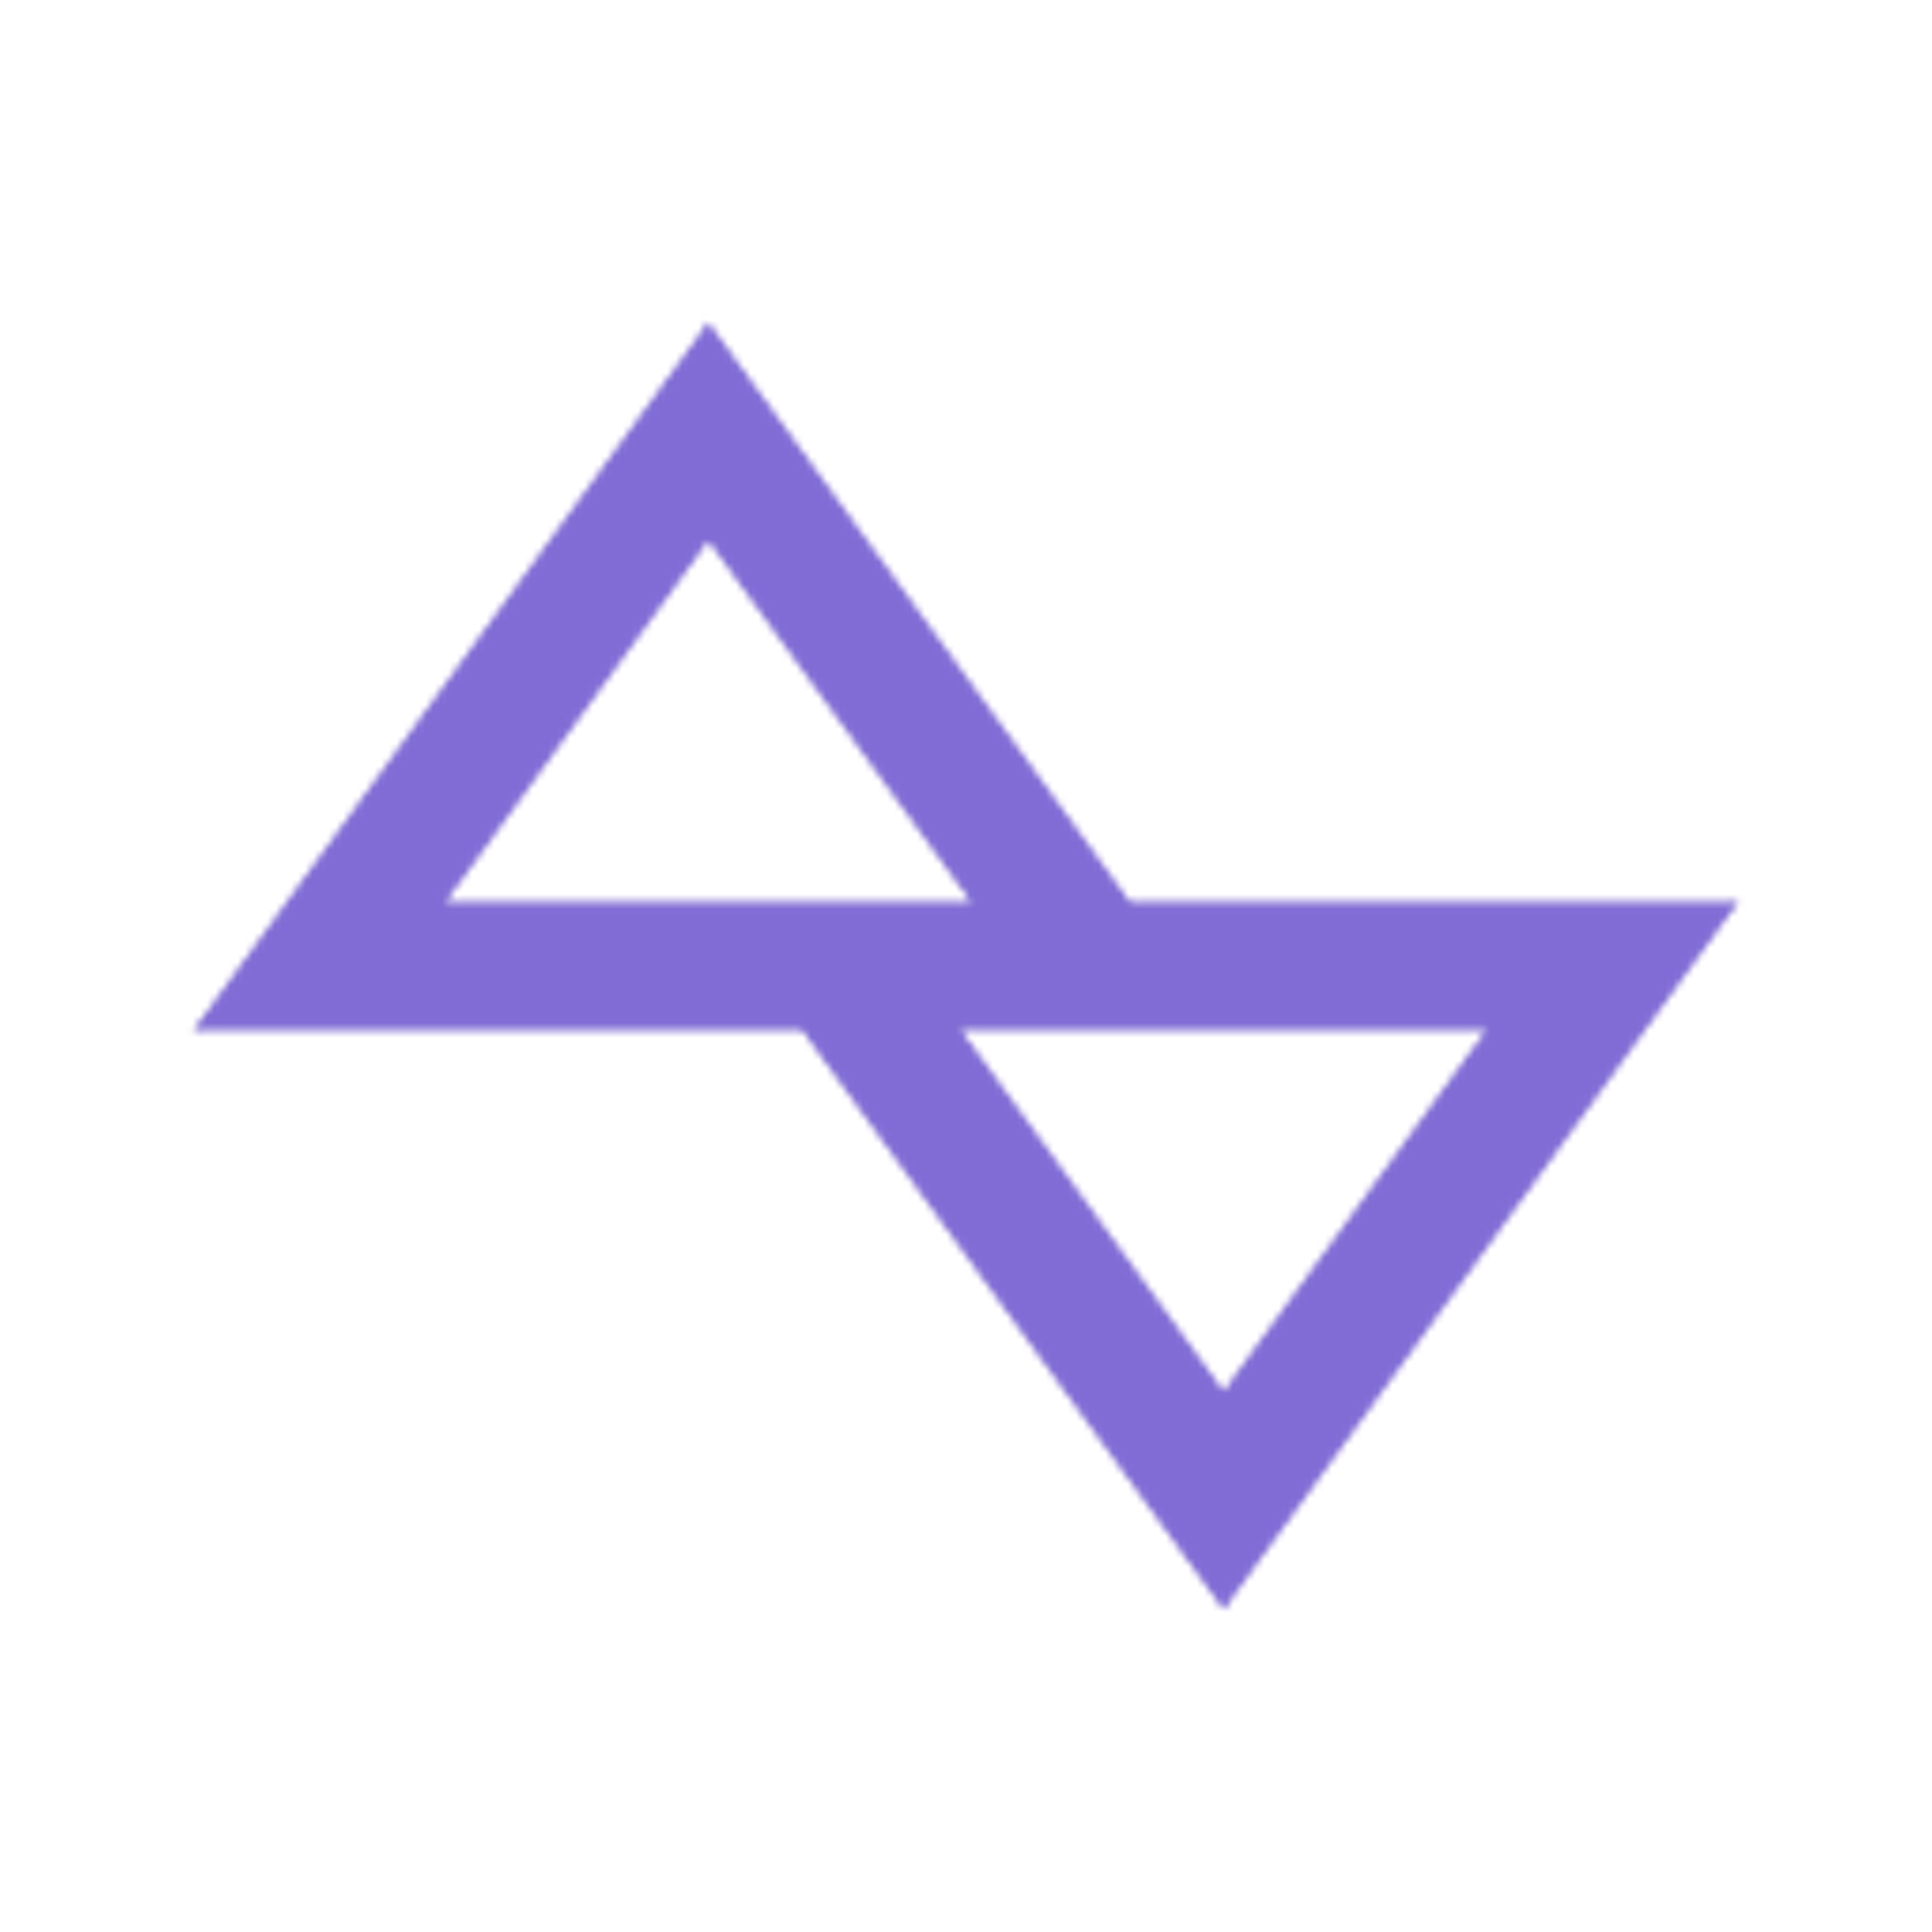 purple triangle icon